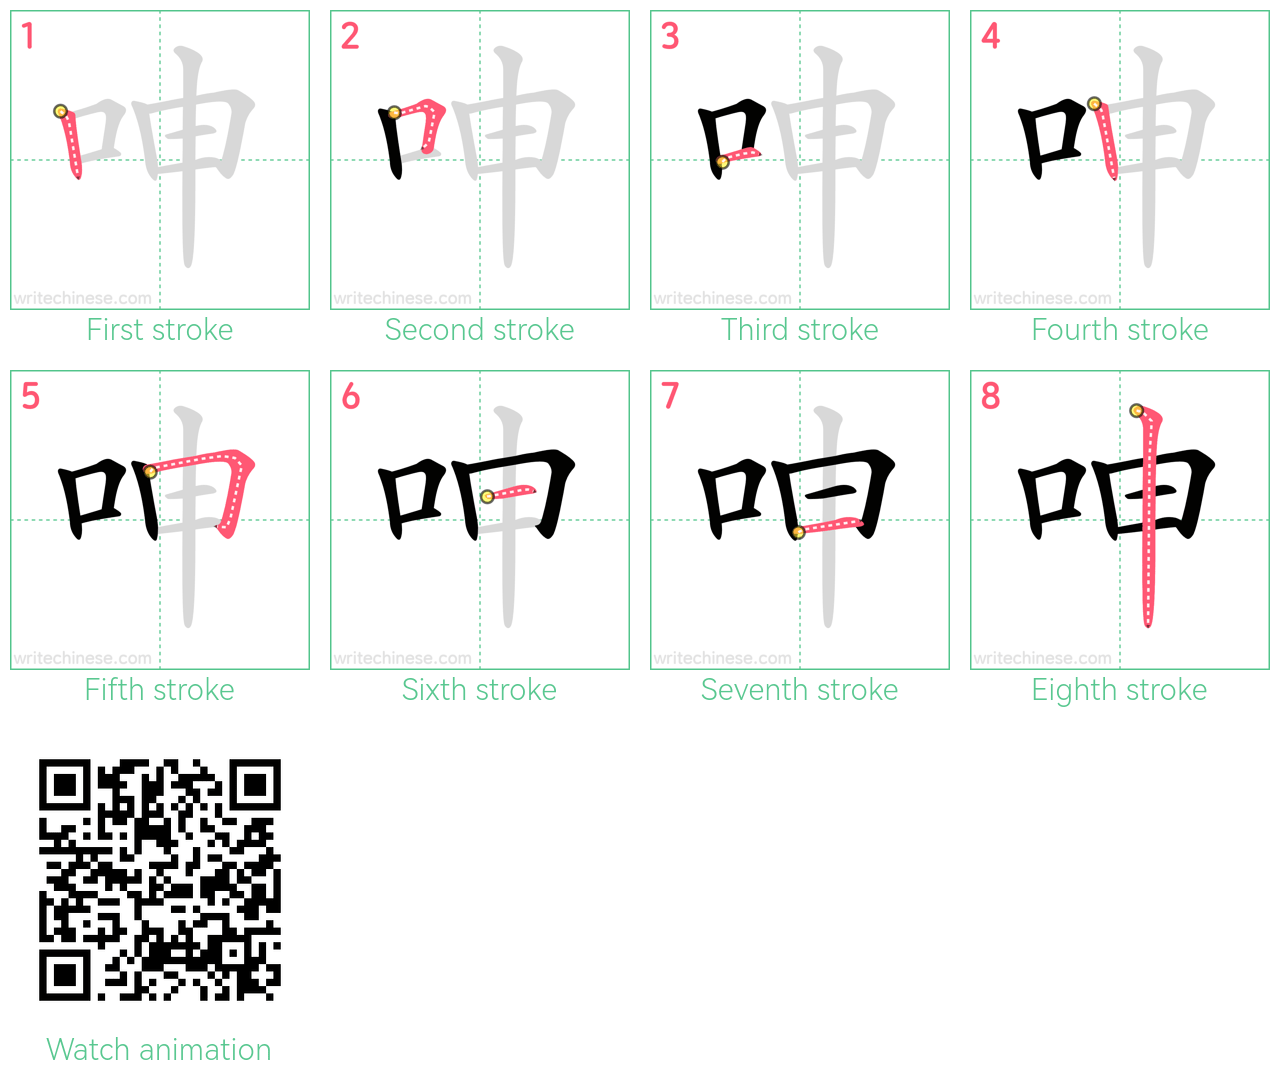 呻 step-by-step stroke order diagrams